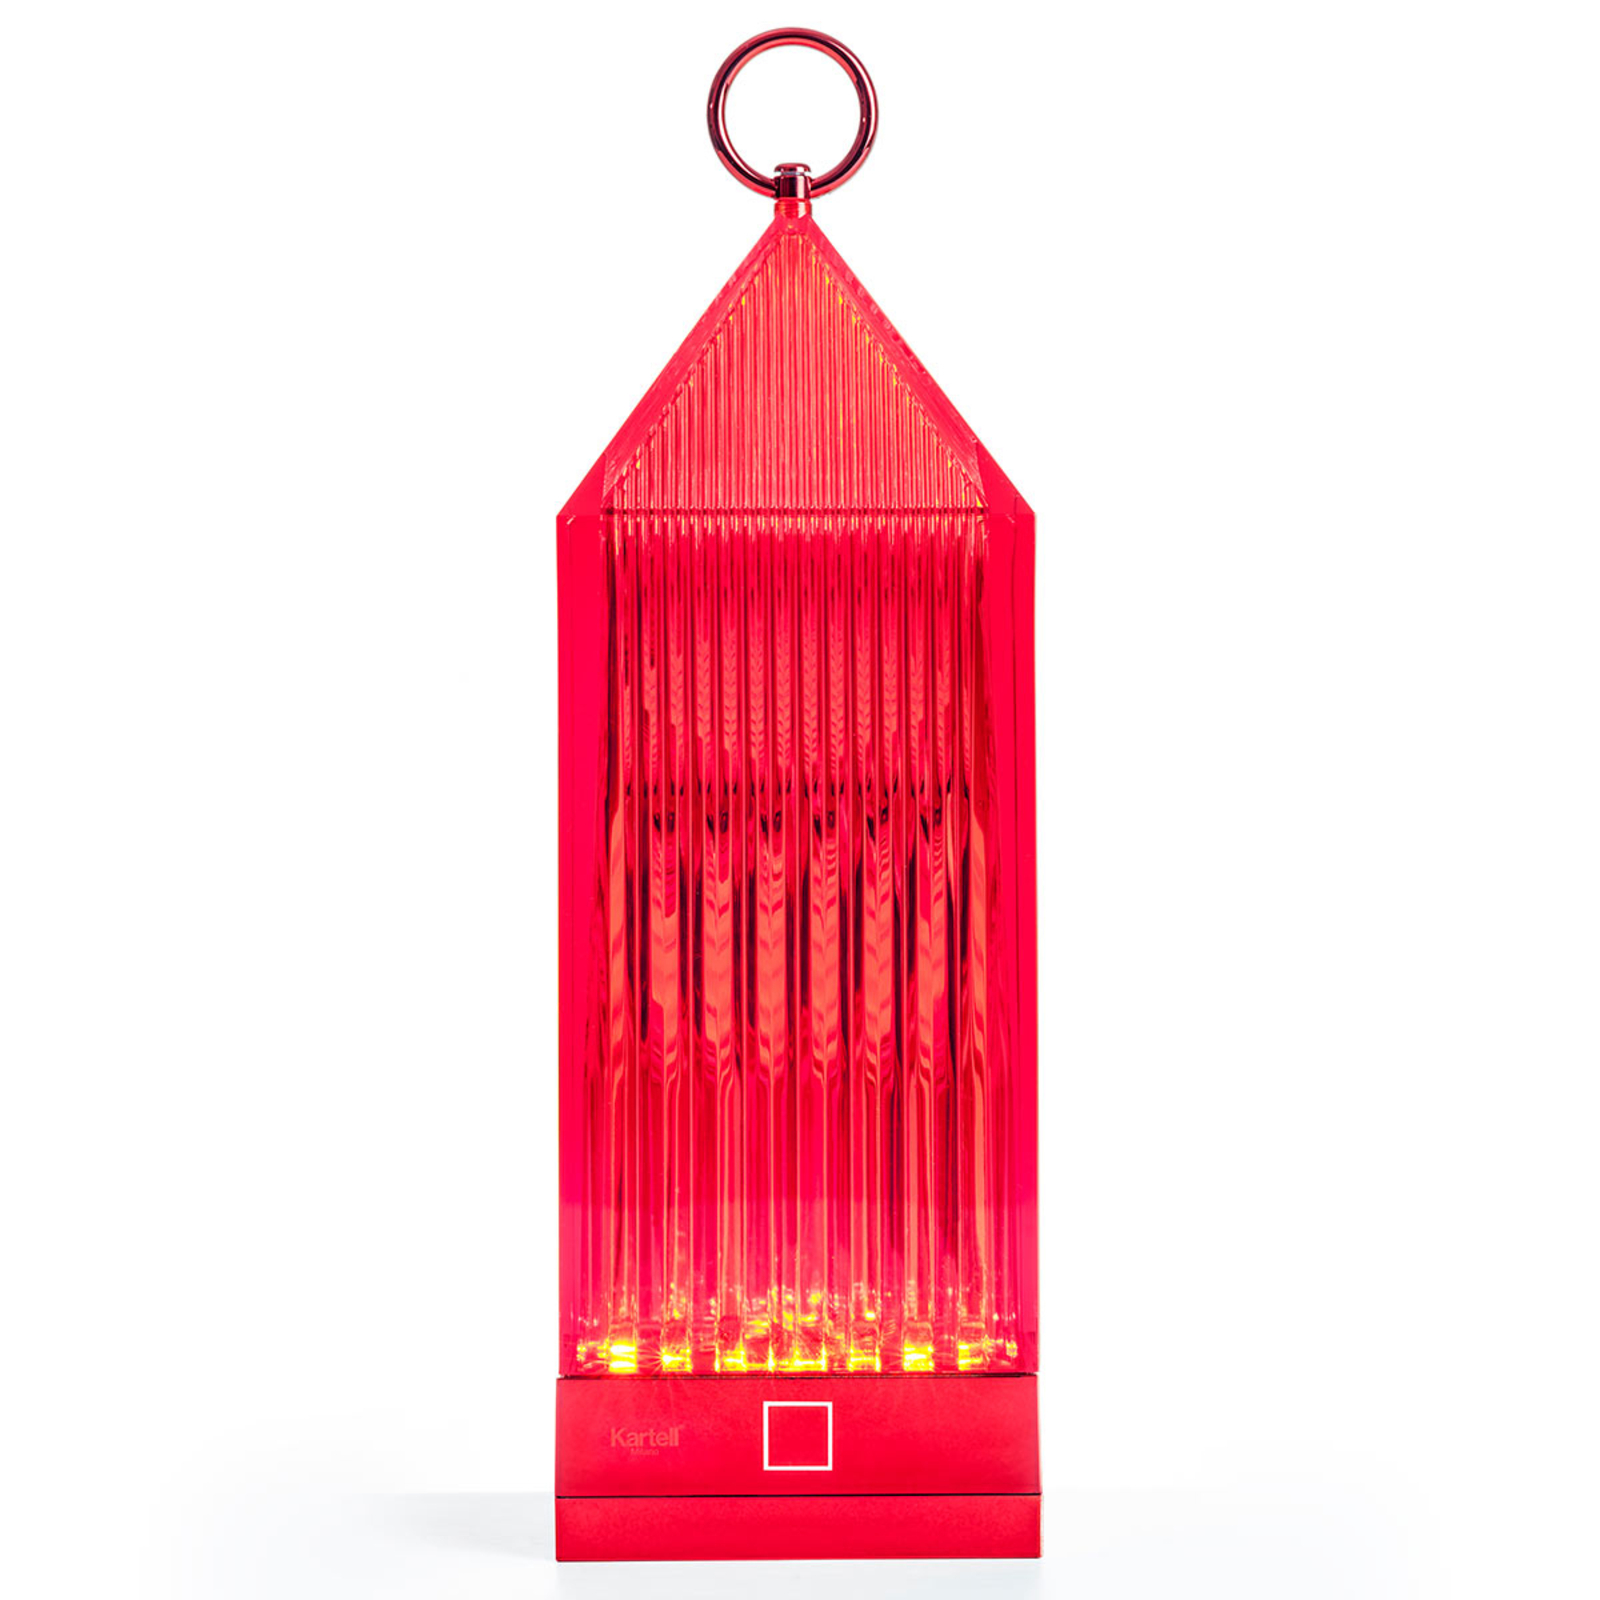 "Kartell Lantern" LED stalinis šviestuvas, raudonos spalvos, IP54